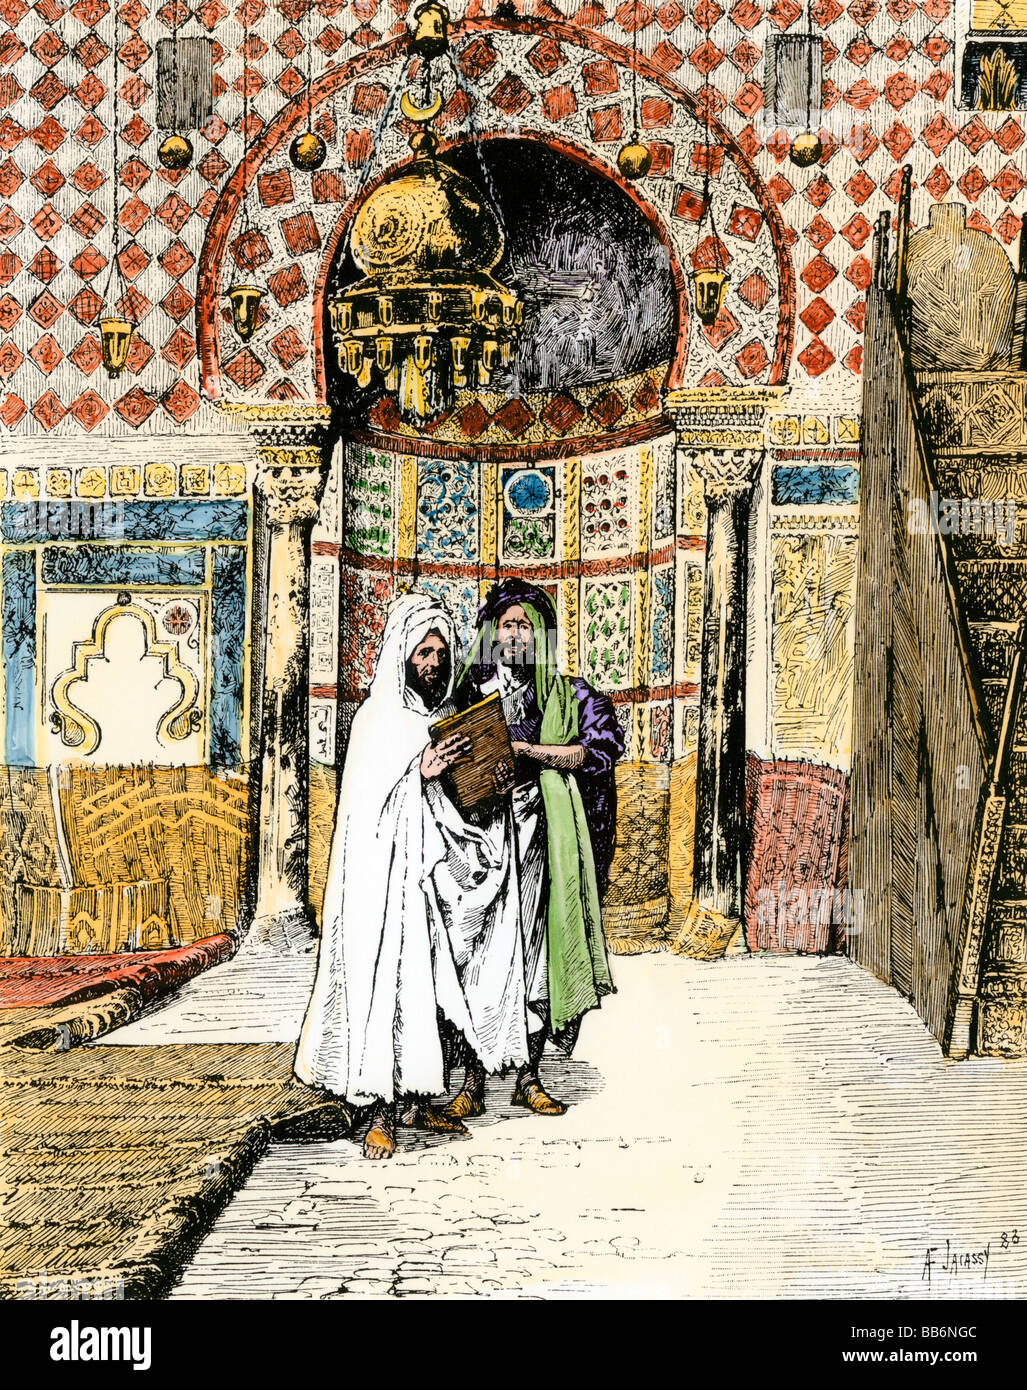 Sanctuaire d'une mosquée musulmane en Afrique du Nord des années 1800. À la main, gravure sur bois Banque D'Images